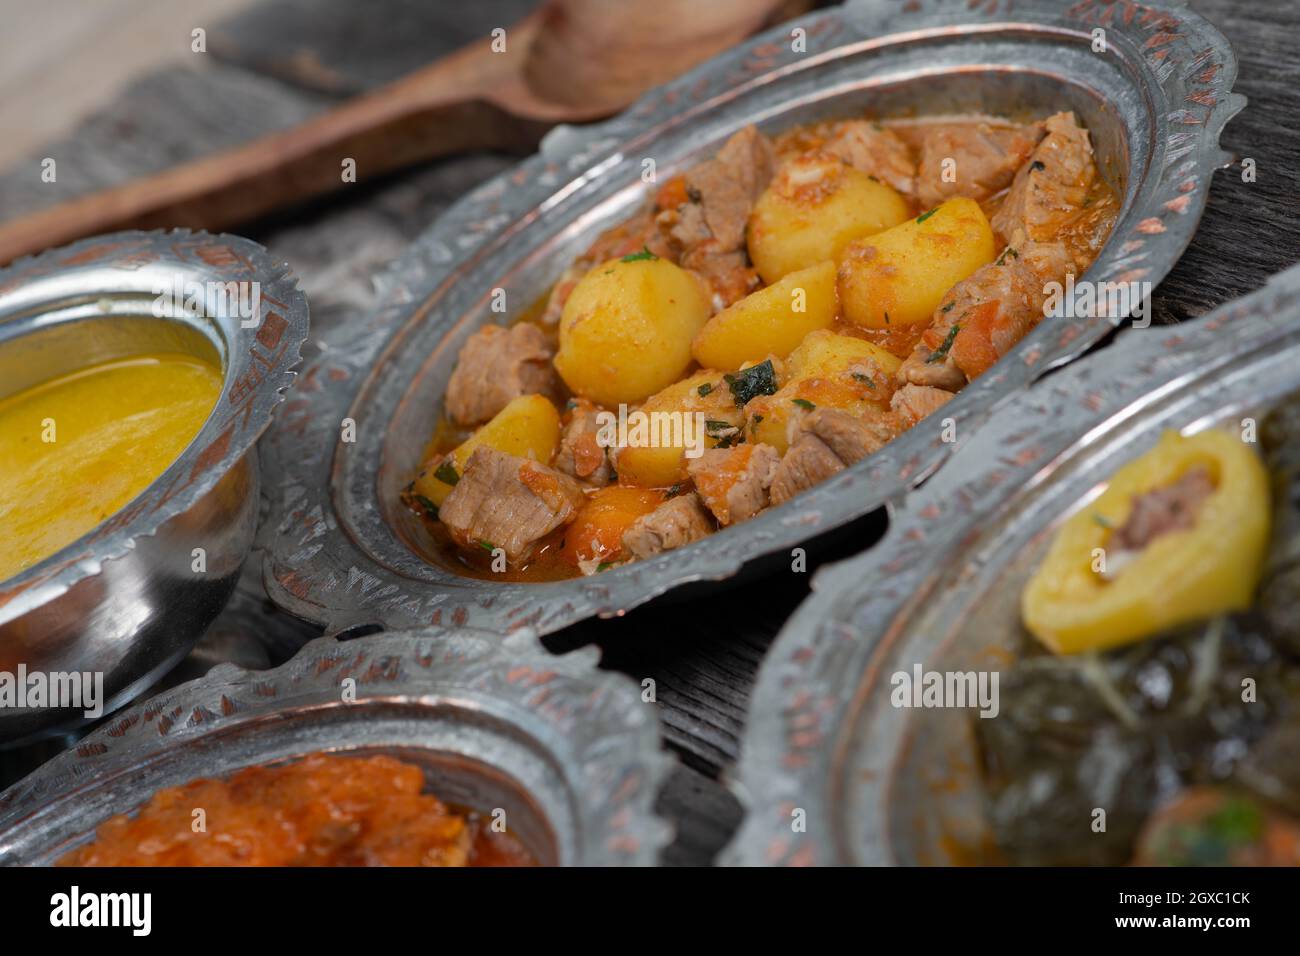 Traditionelles Ramadan-Iftar-Abendessen von Eid Mubarak. Sortierte leckere  Speisen in authentischen rustikalen Gerichten auf blauem Holzhintergrund.  Türkische bosnische Lebensmittel Fleisch keb Stockfotografie - Alamy